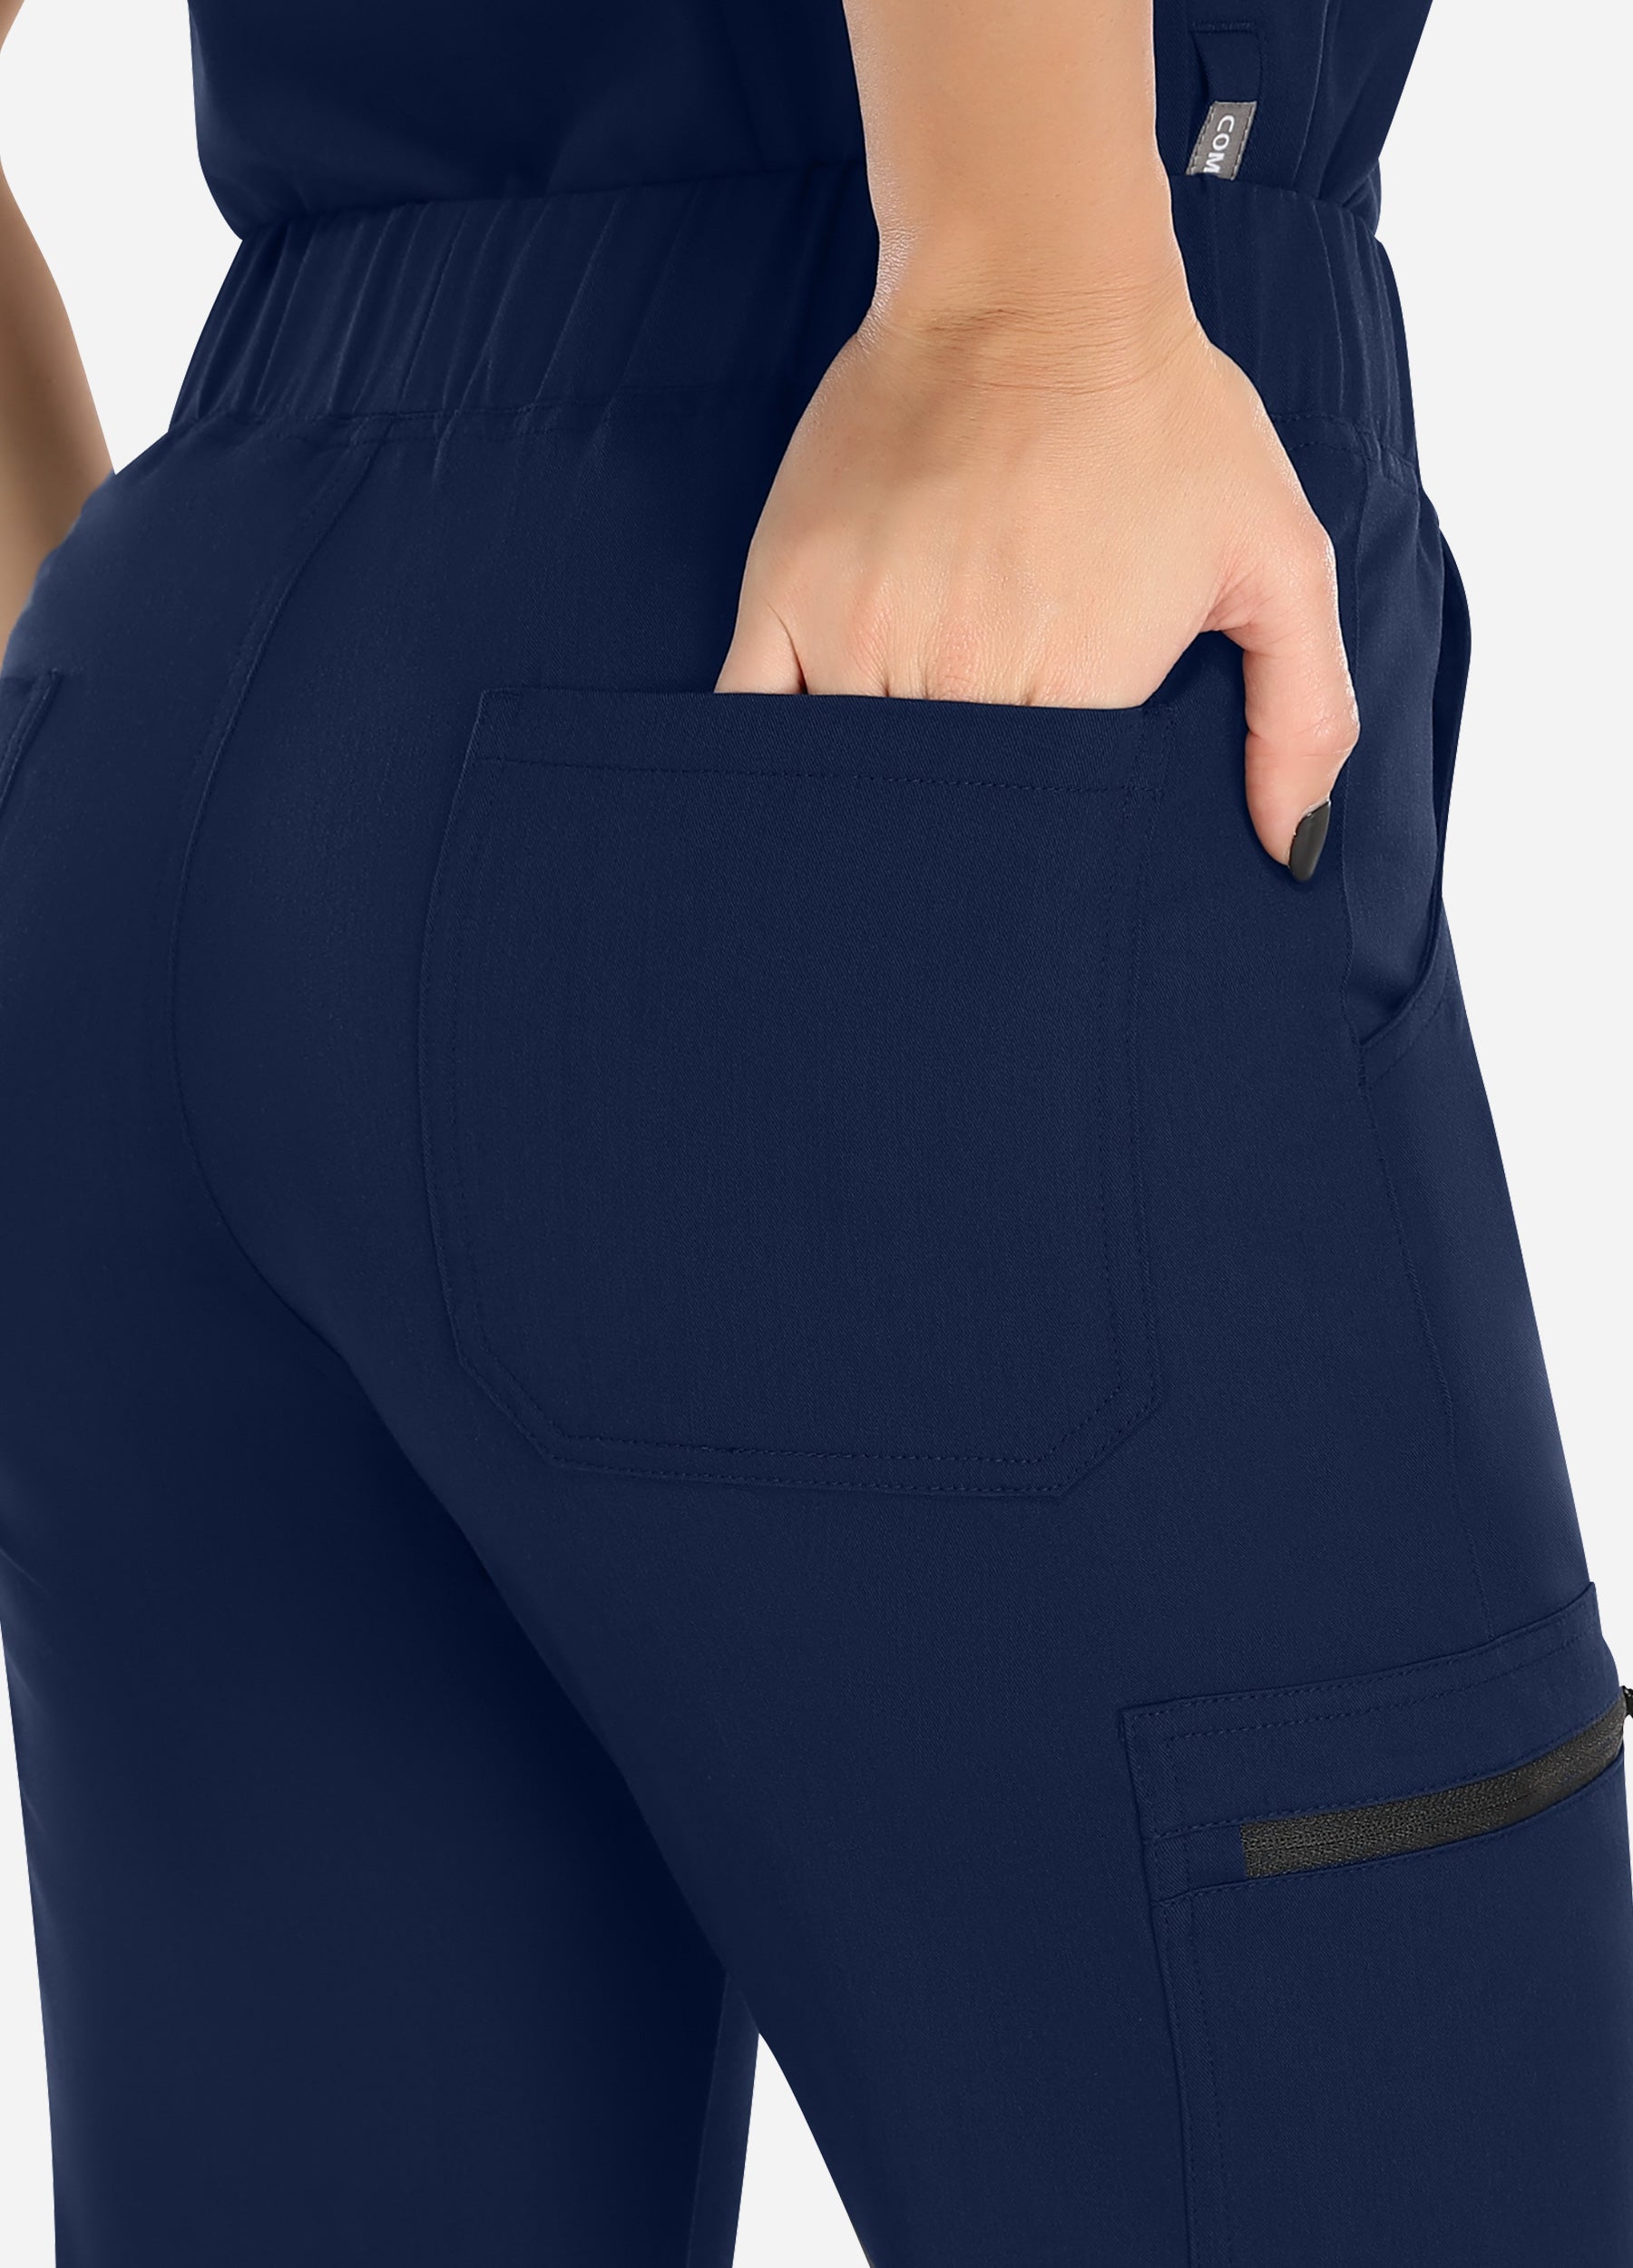 Pantalón médico cónico de 8 bolsillos para mujer